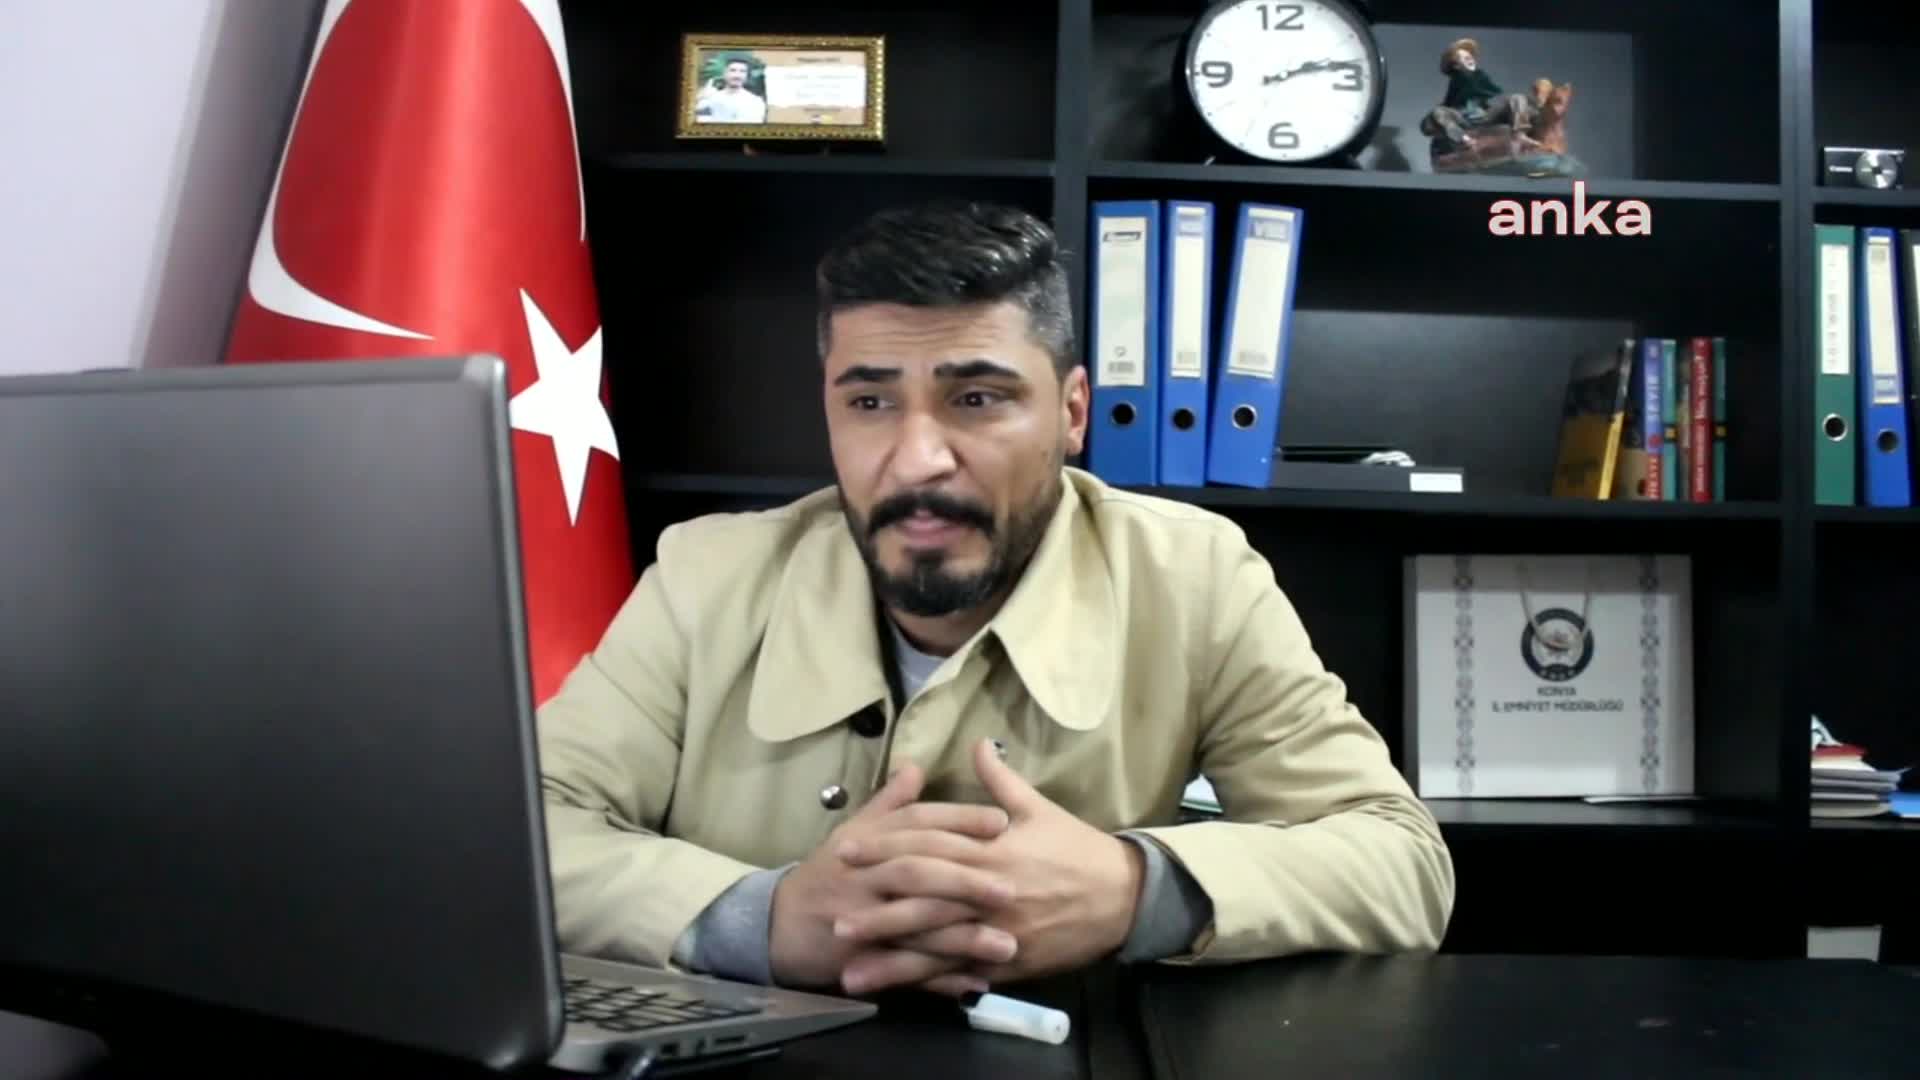 Tehdit edilen gazeteci: "MHP’li Ereğli İlçe Belediyesi'nde  bazı kişilerin işe gitmeden maaş aldıklarını yazmıştım"